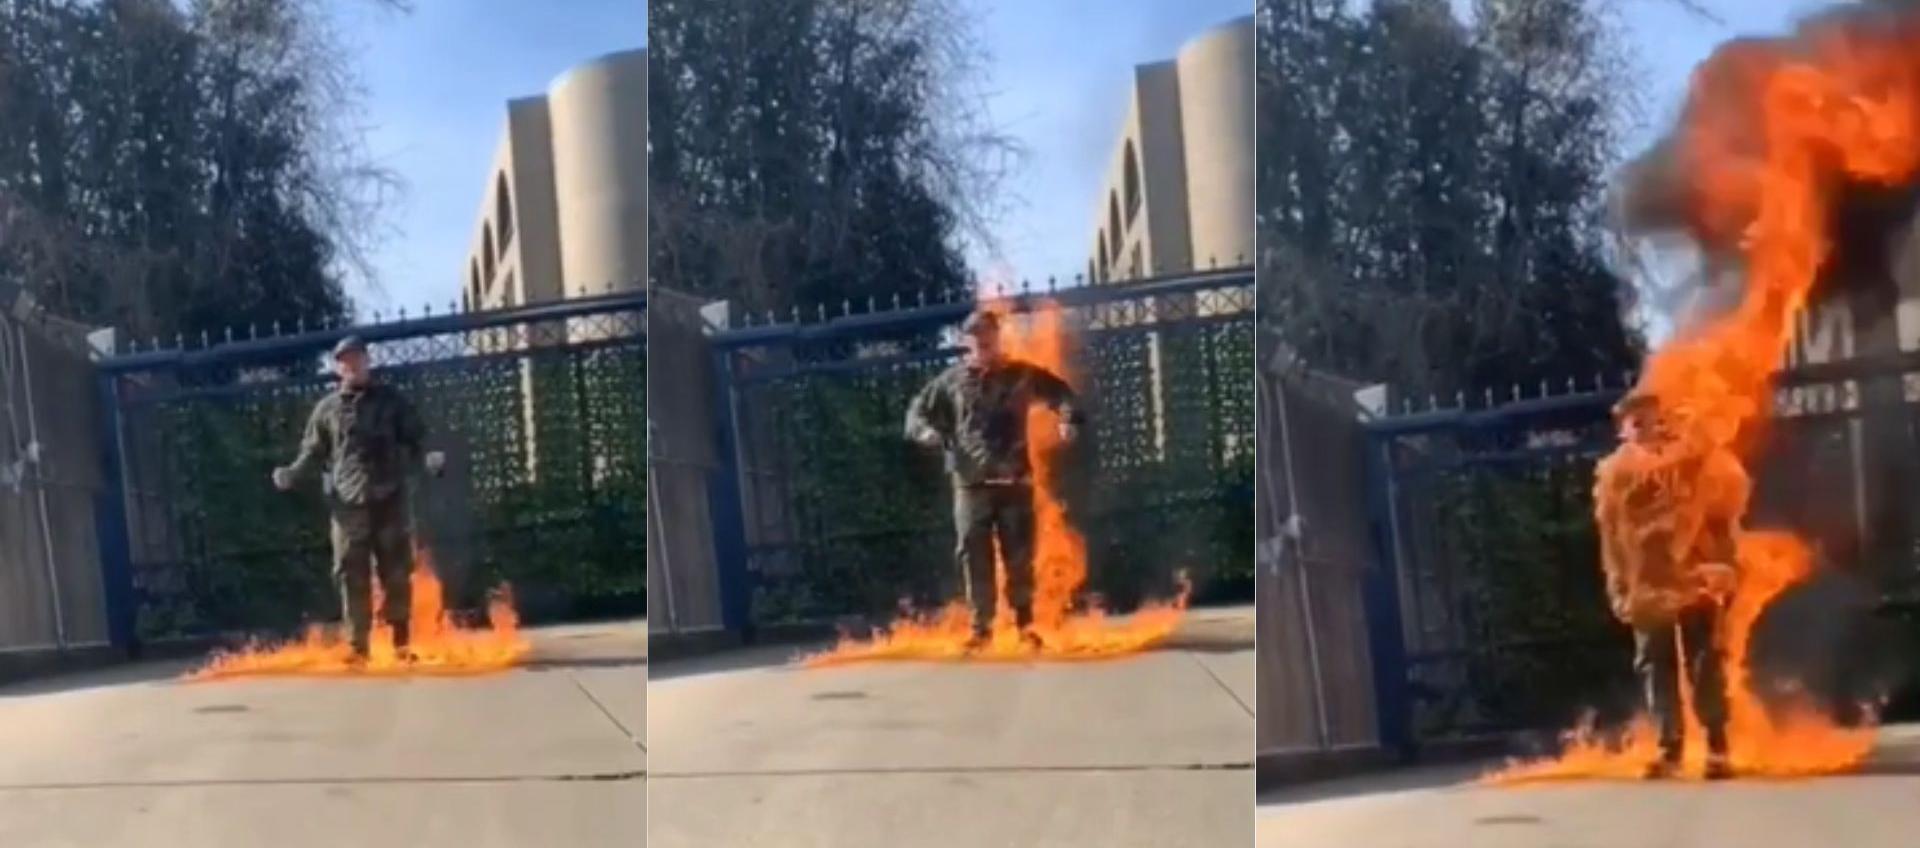 Soldado se inmola frente a embajada de Israel.